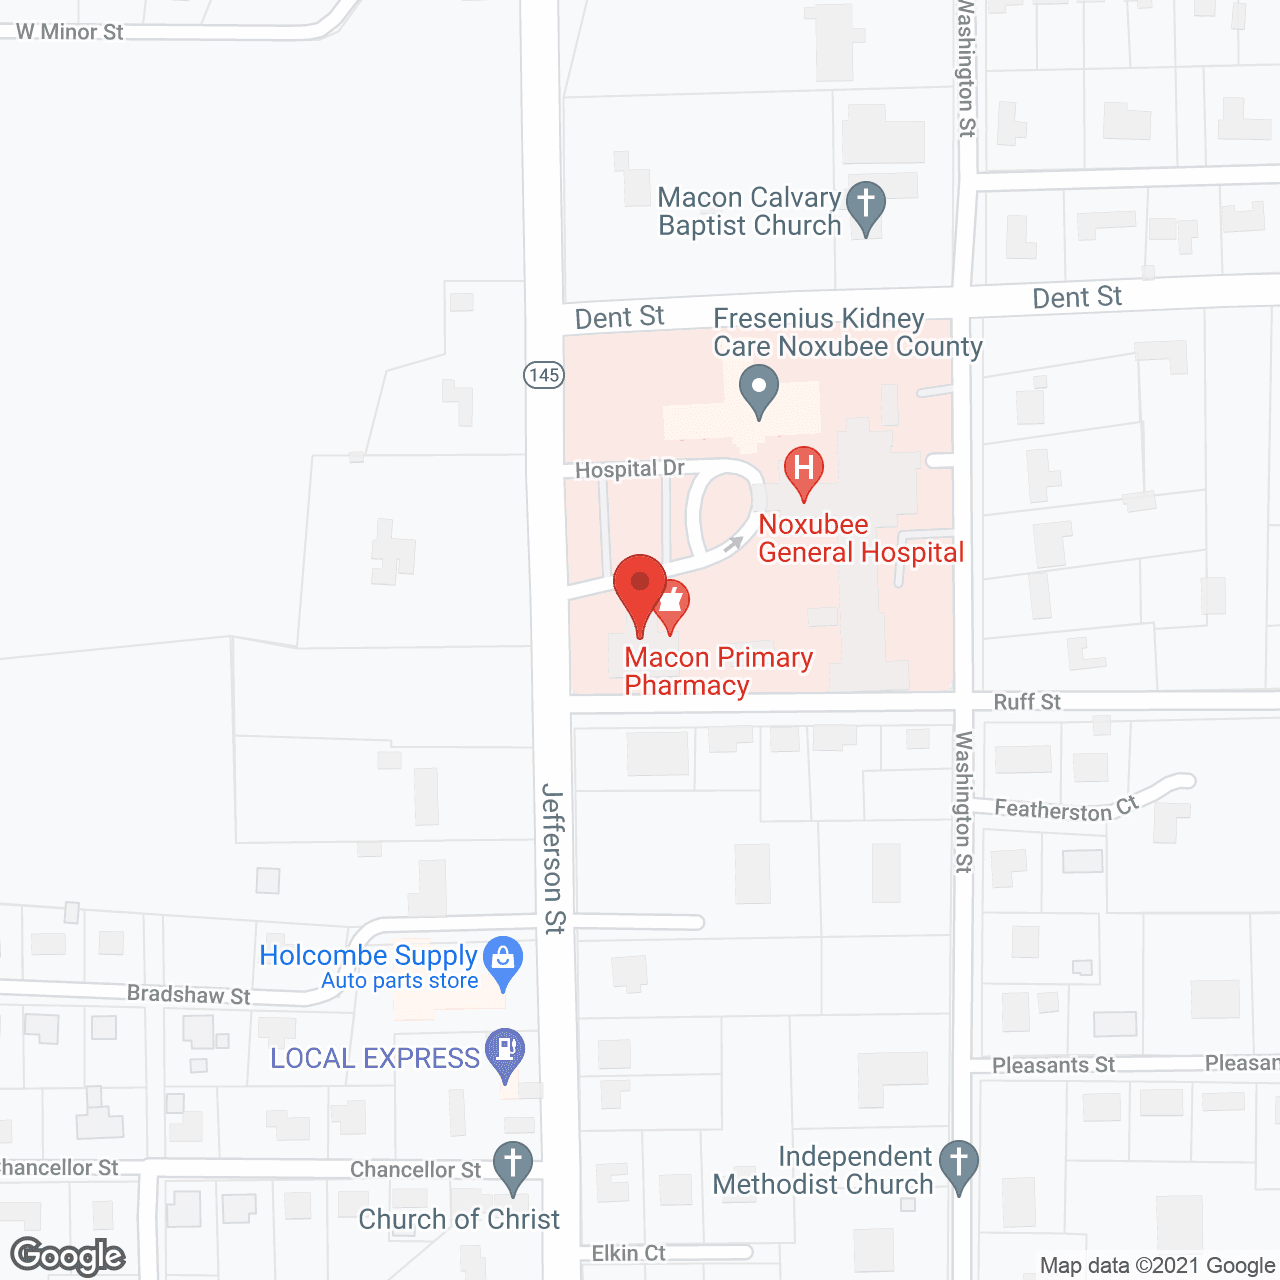 Noxubee County Nursing Home in google map